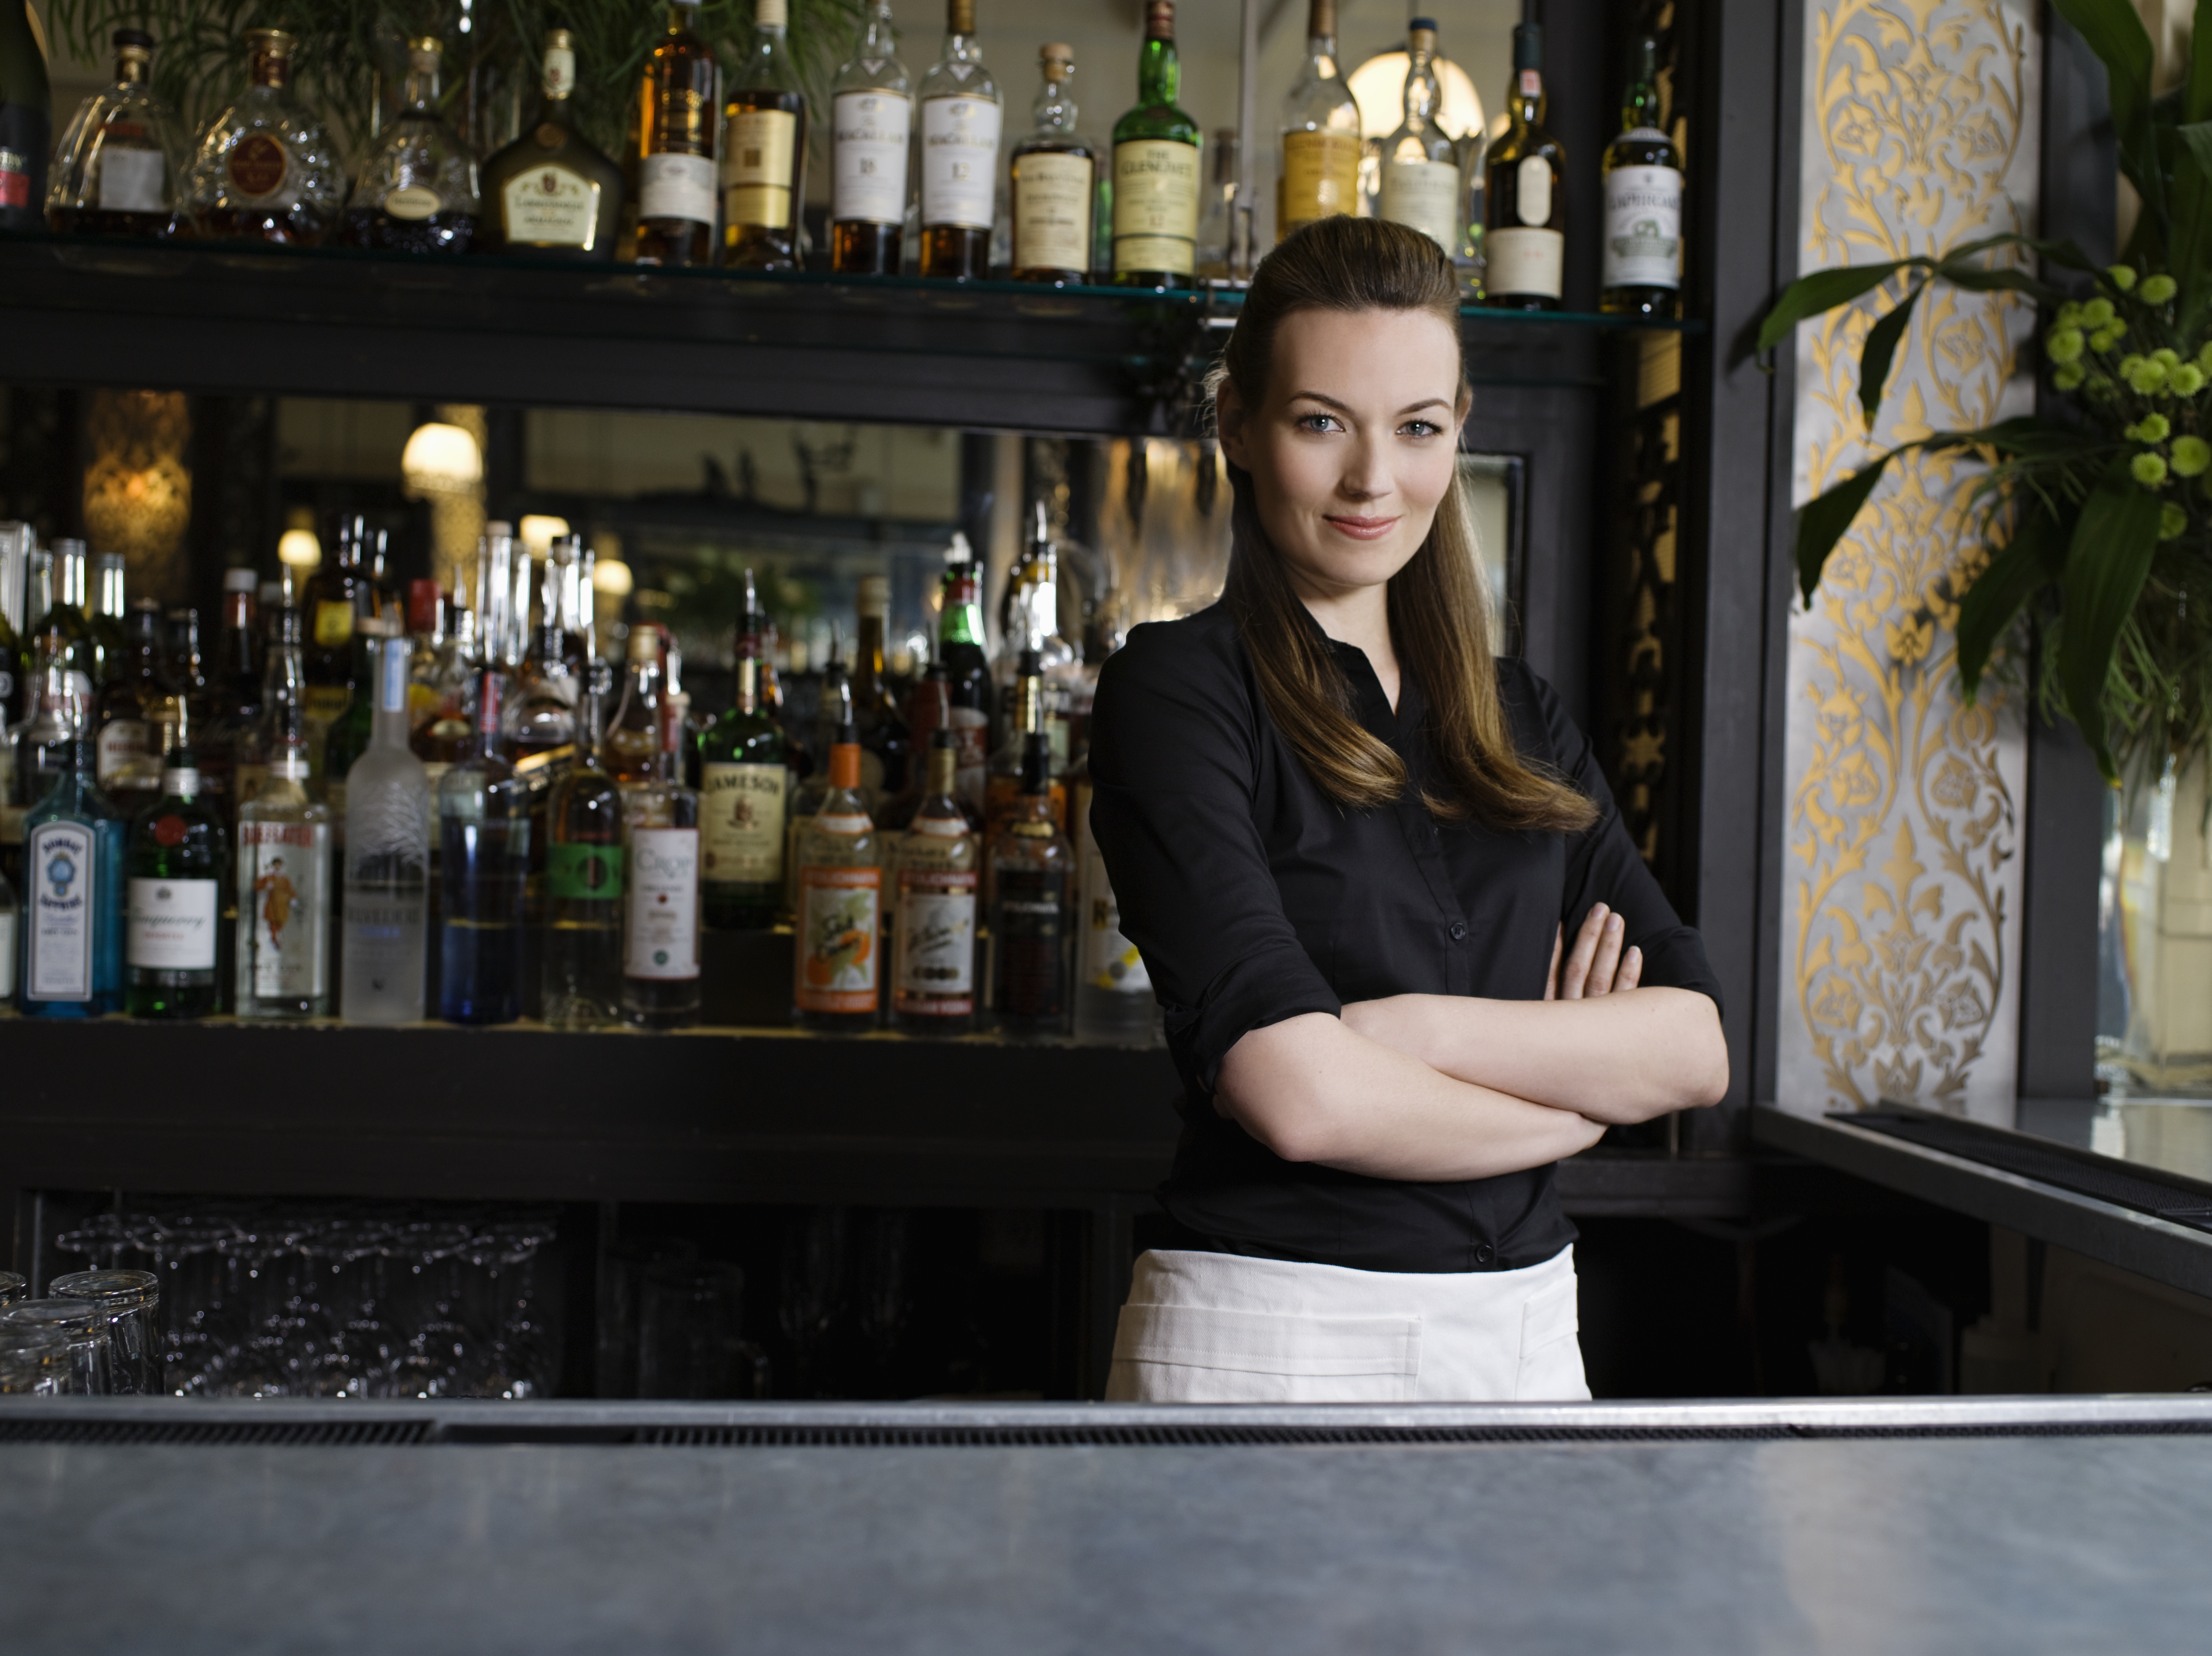 Eine selbstbewusste Barkeeperin, die hinter der Bar steht | Quelle: Getty Images